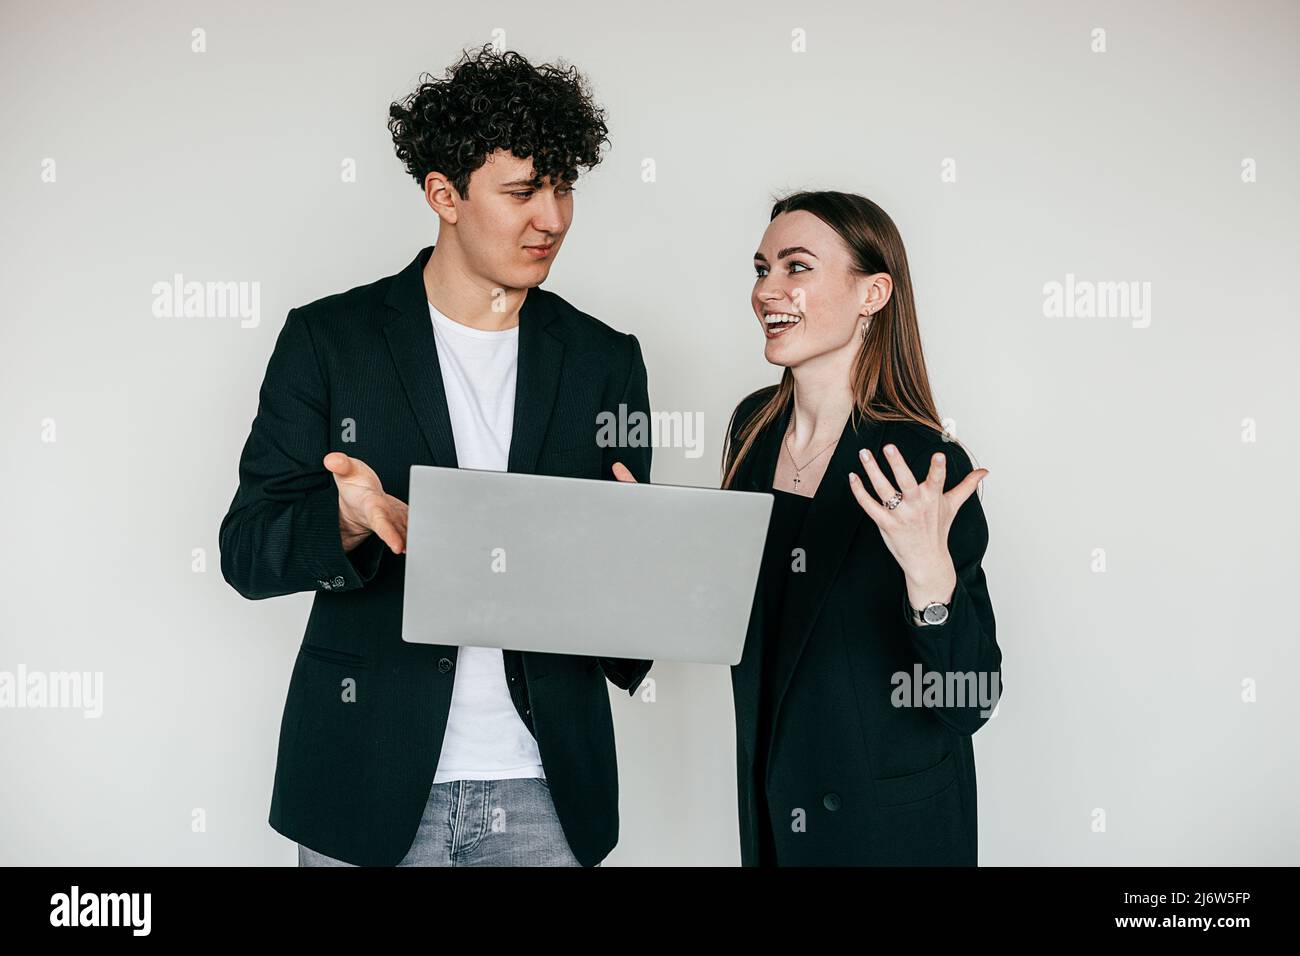 Porträt eines jungen überemotionalen Paares in Schwarz. Junger zufriedener Mann, der überfröhte Frau mit einem Laptop zeigt. Stockfoto